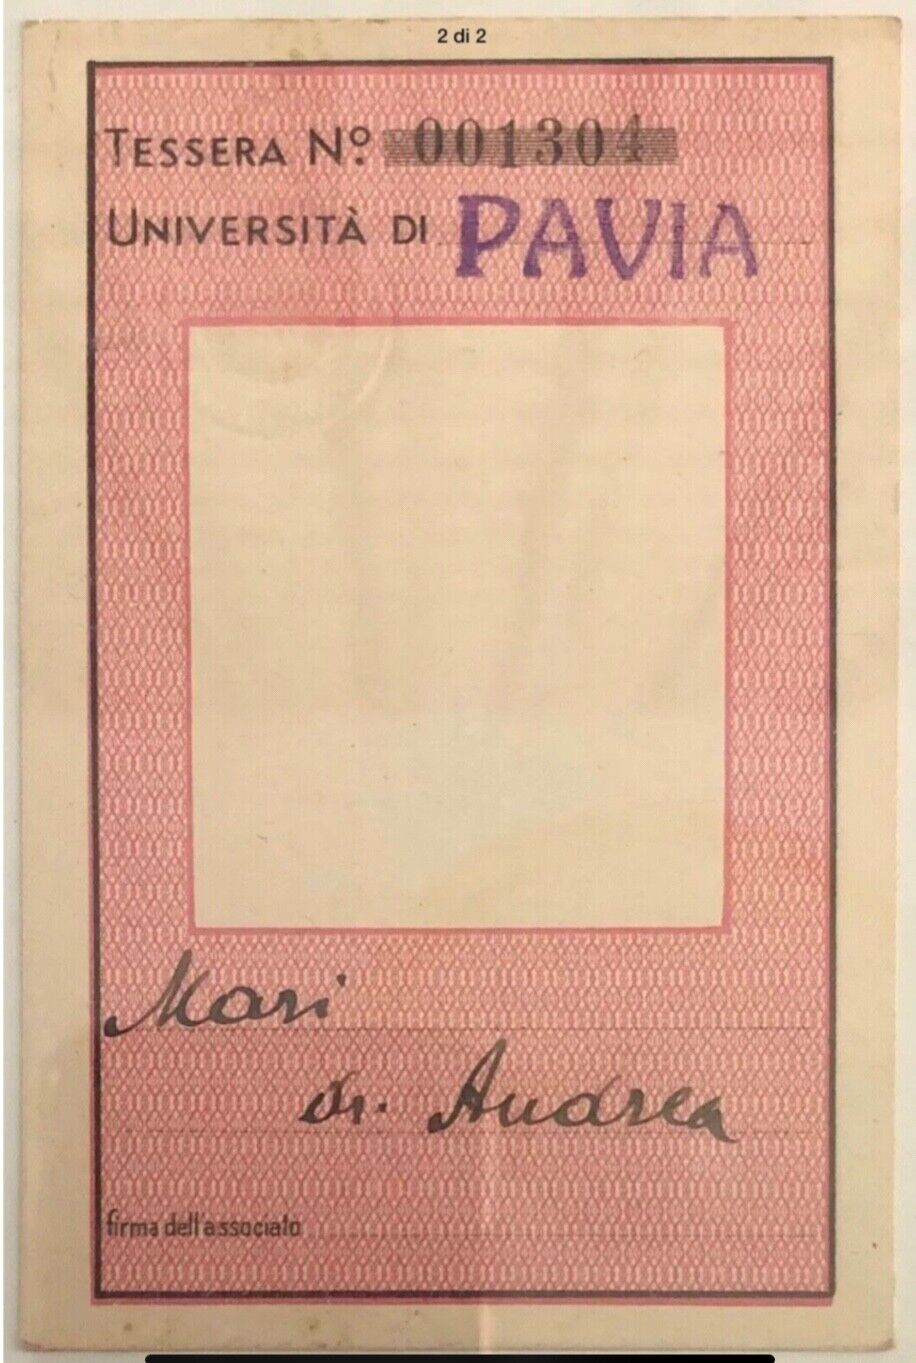 PAVIA ASSISTENTI UNIVERSITARI TESSERA A.XII° 1934 ASSOCIAZIONE DELLA SCUOLA